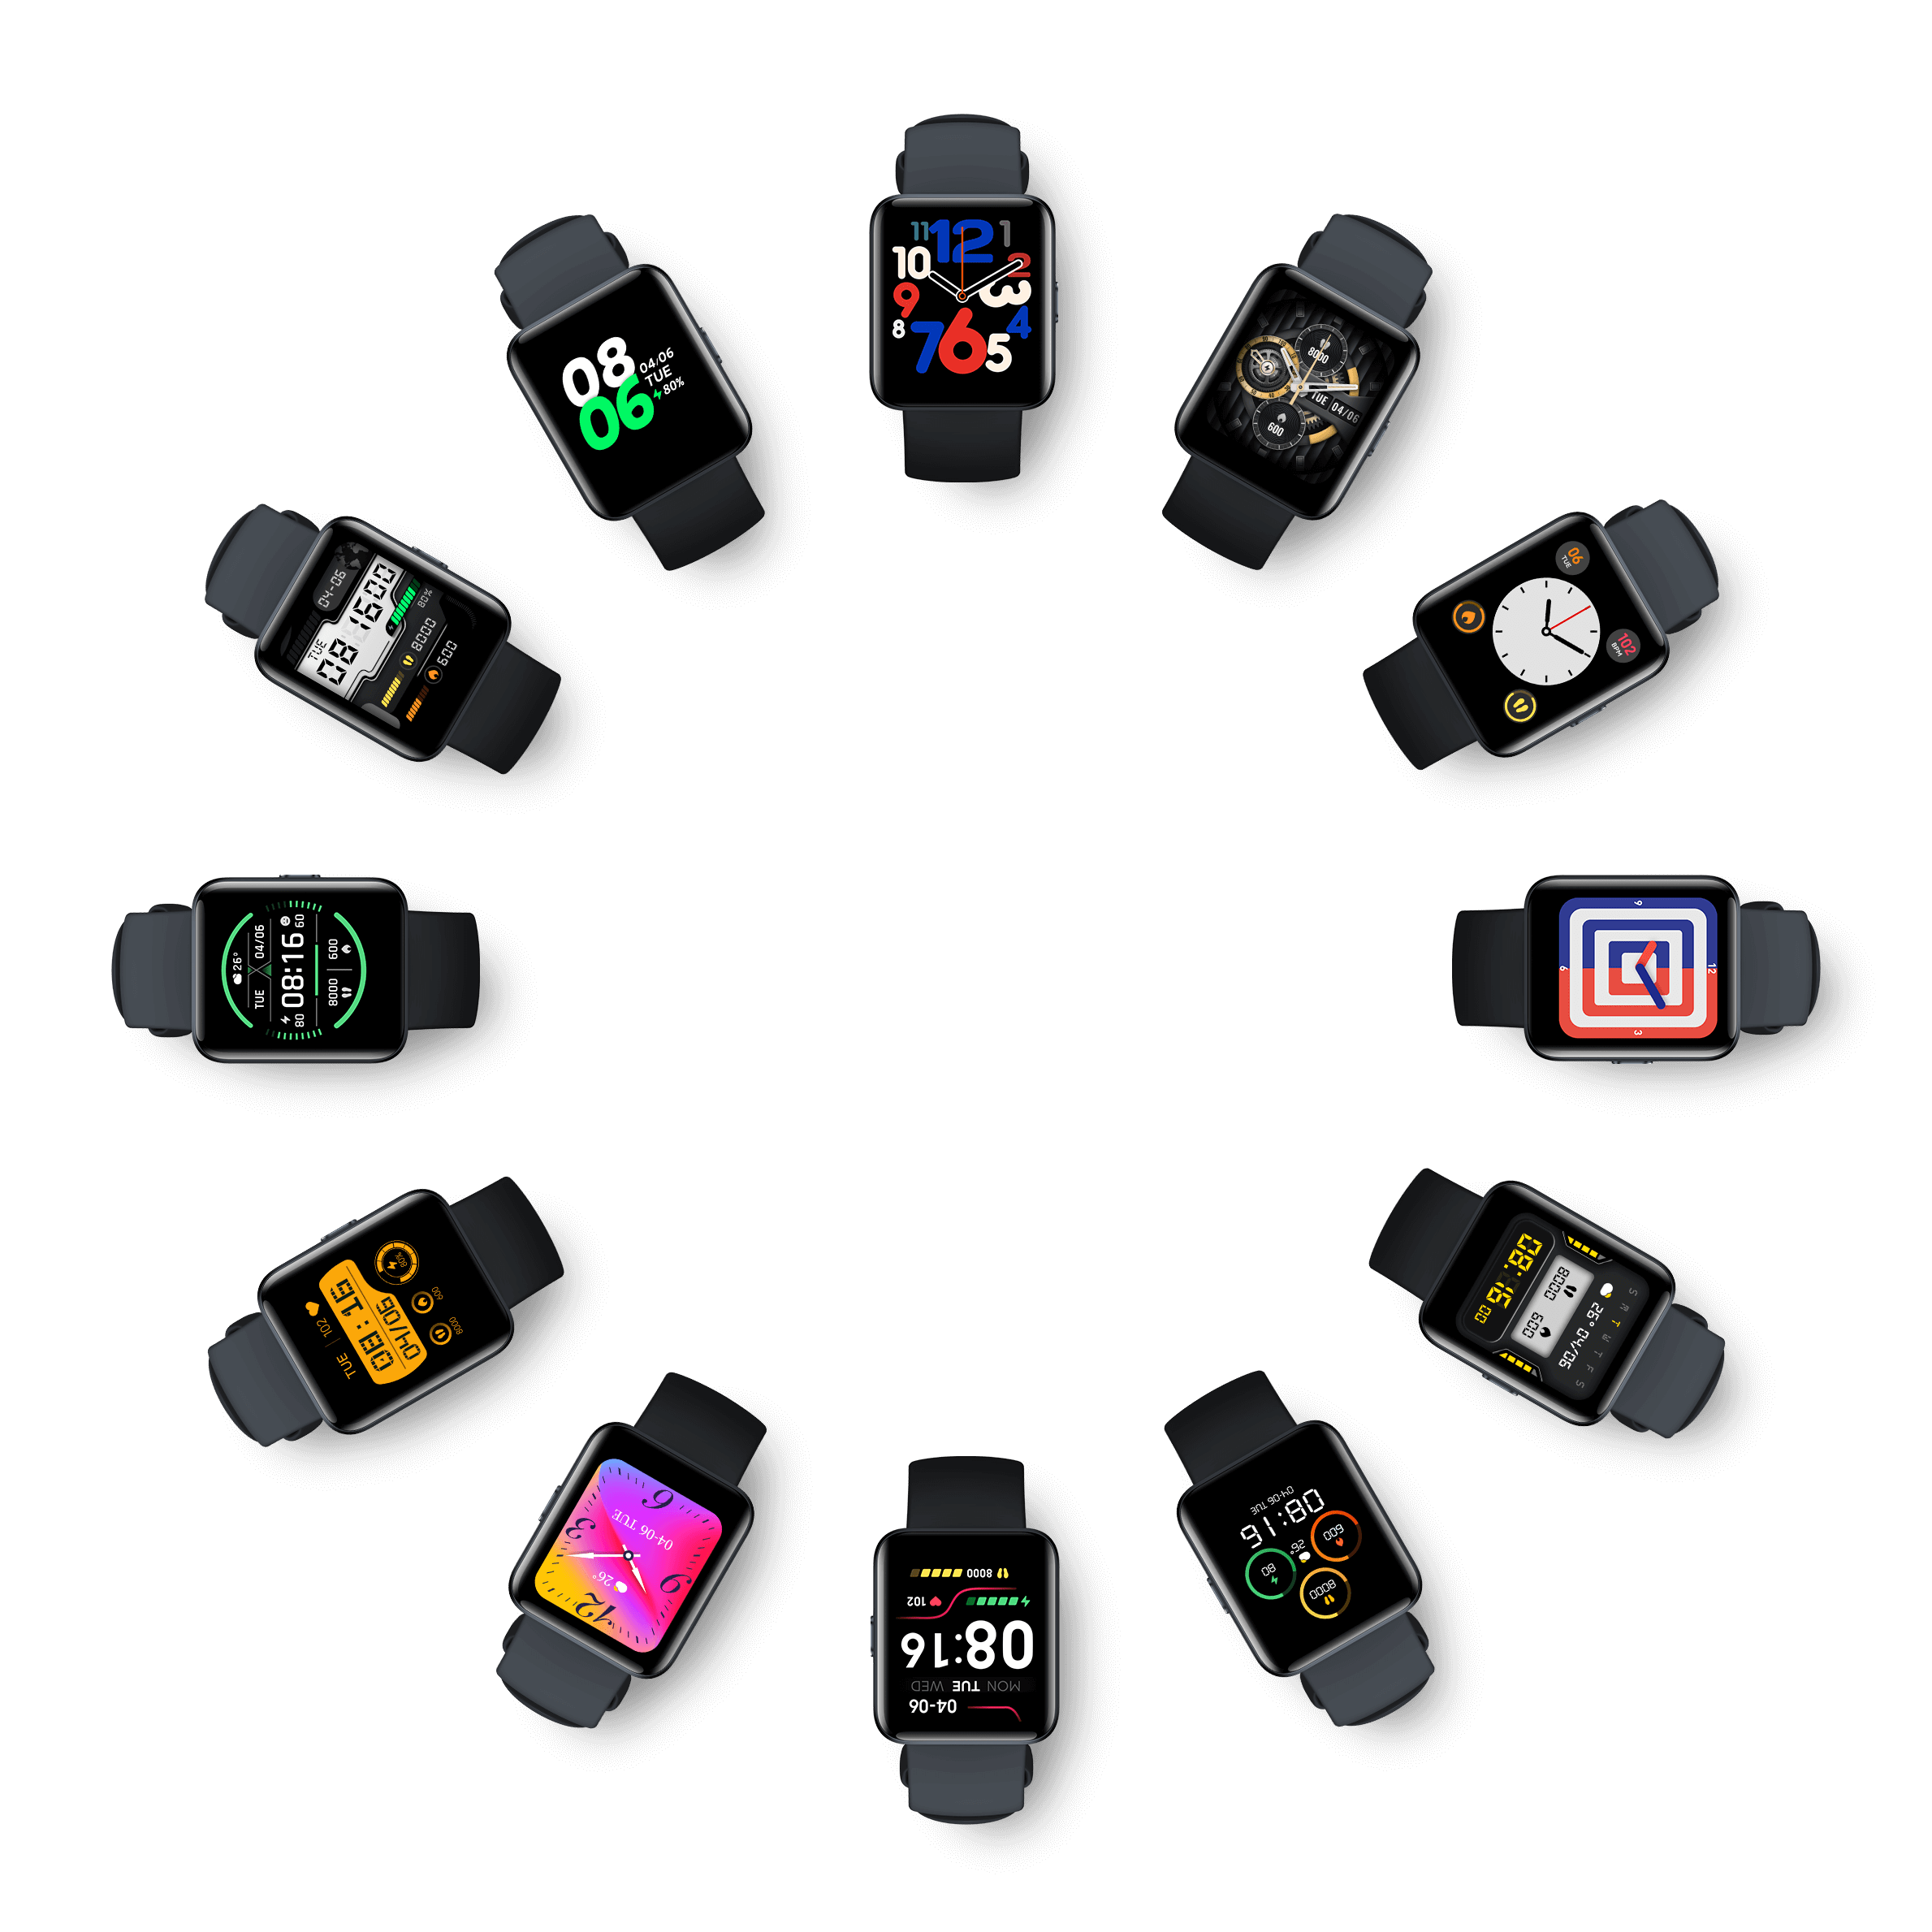 Часы сяоми вотч 2. Смарт часы Redmi watch 2 Lite. Смарт часы Xiaomi редми вотч 2 Лайт. Смарт-часы Xiaomi Redmi watch 2 Lite gl. Март-часы Xiaomi Redmi watch 2 Lite.